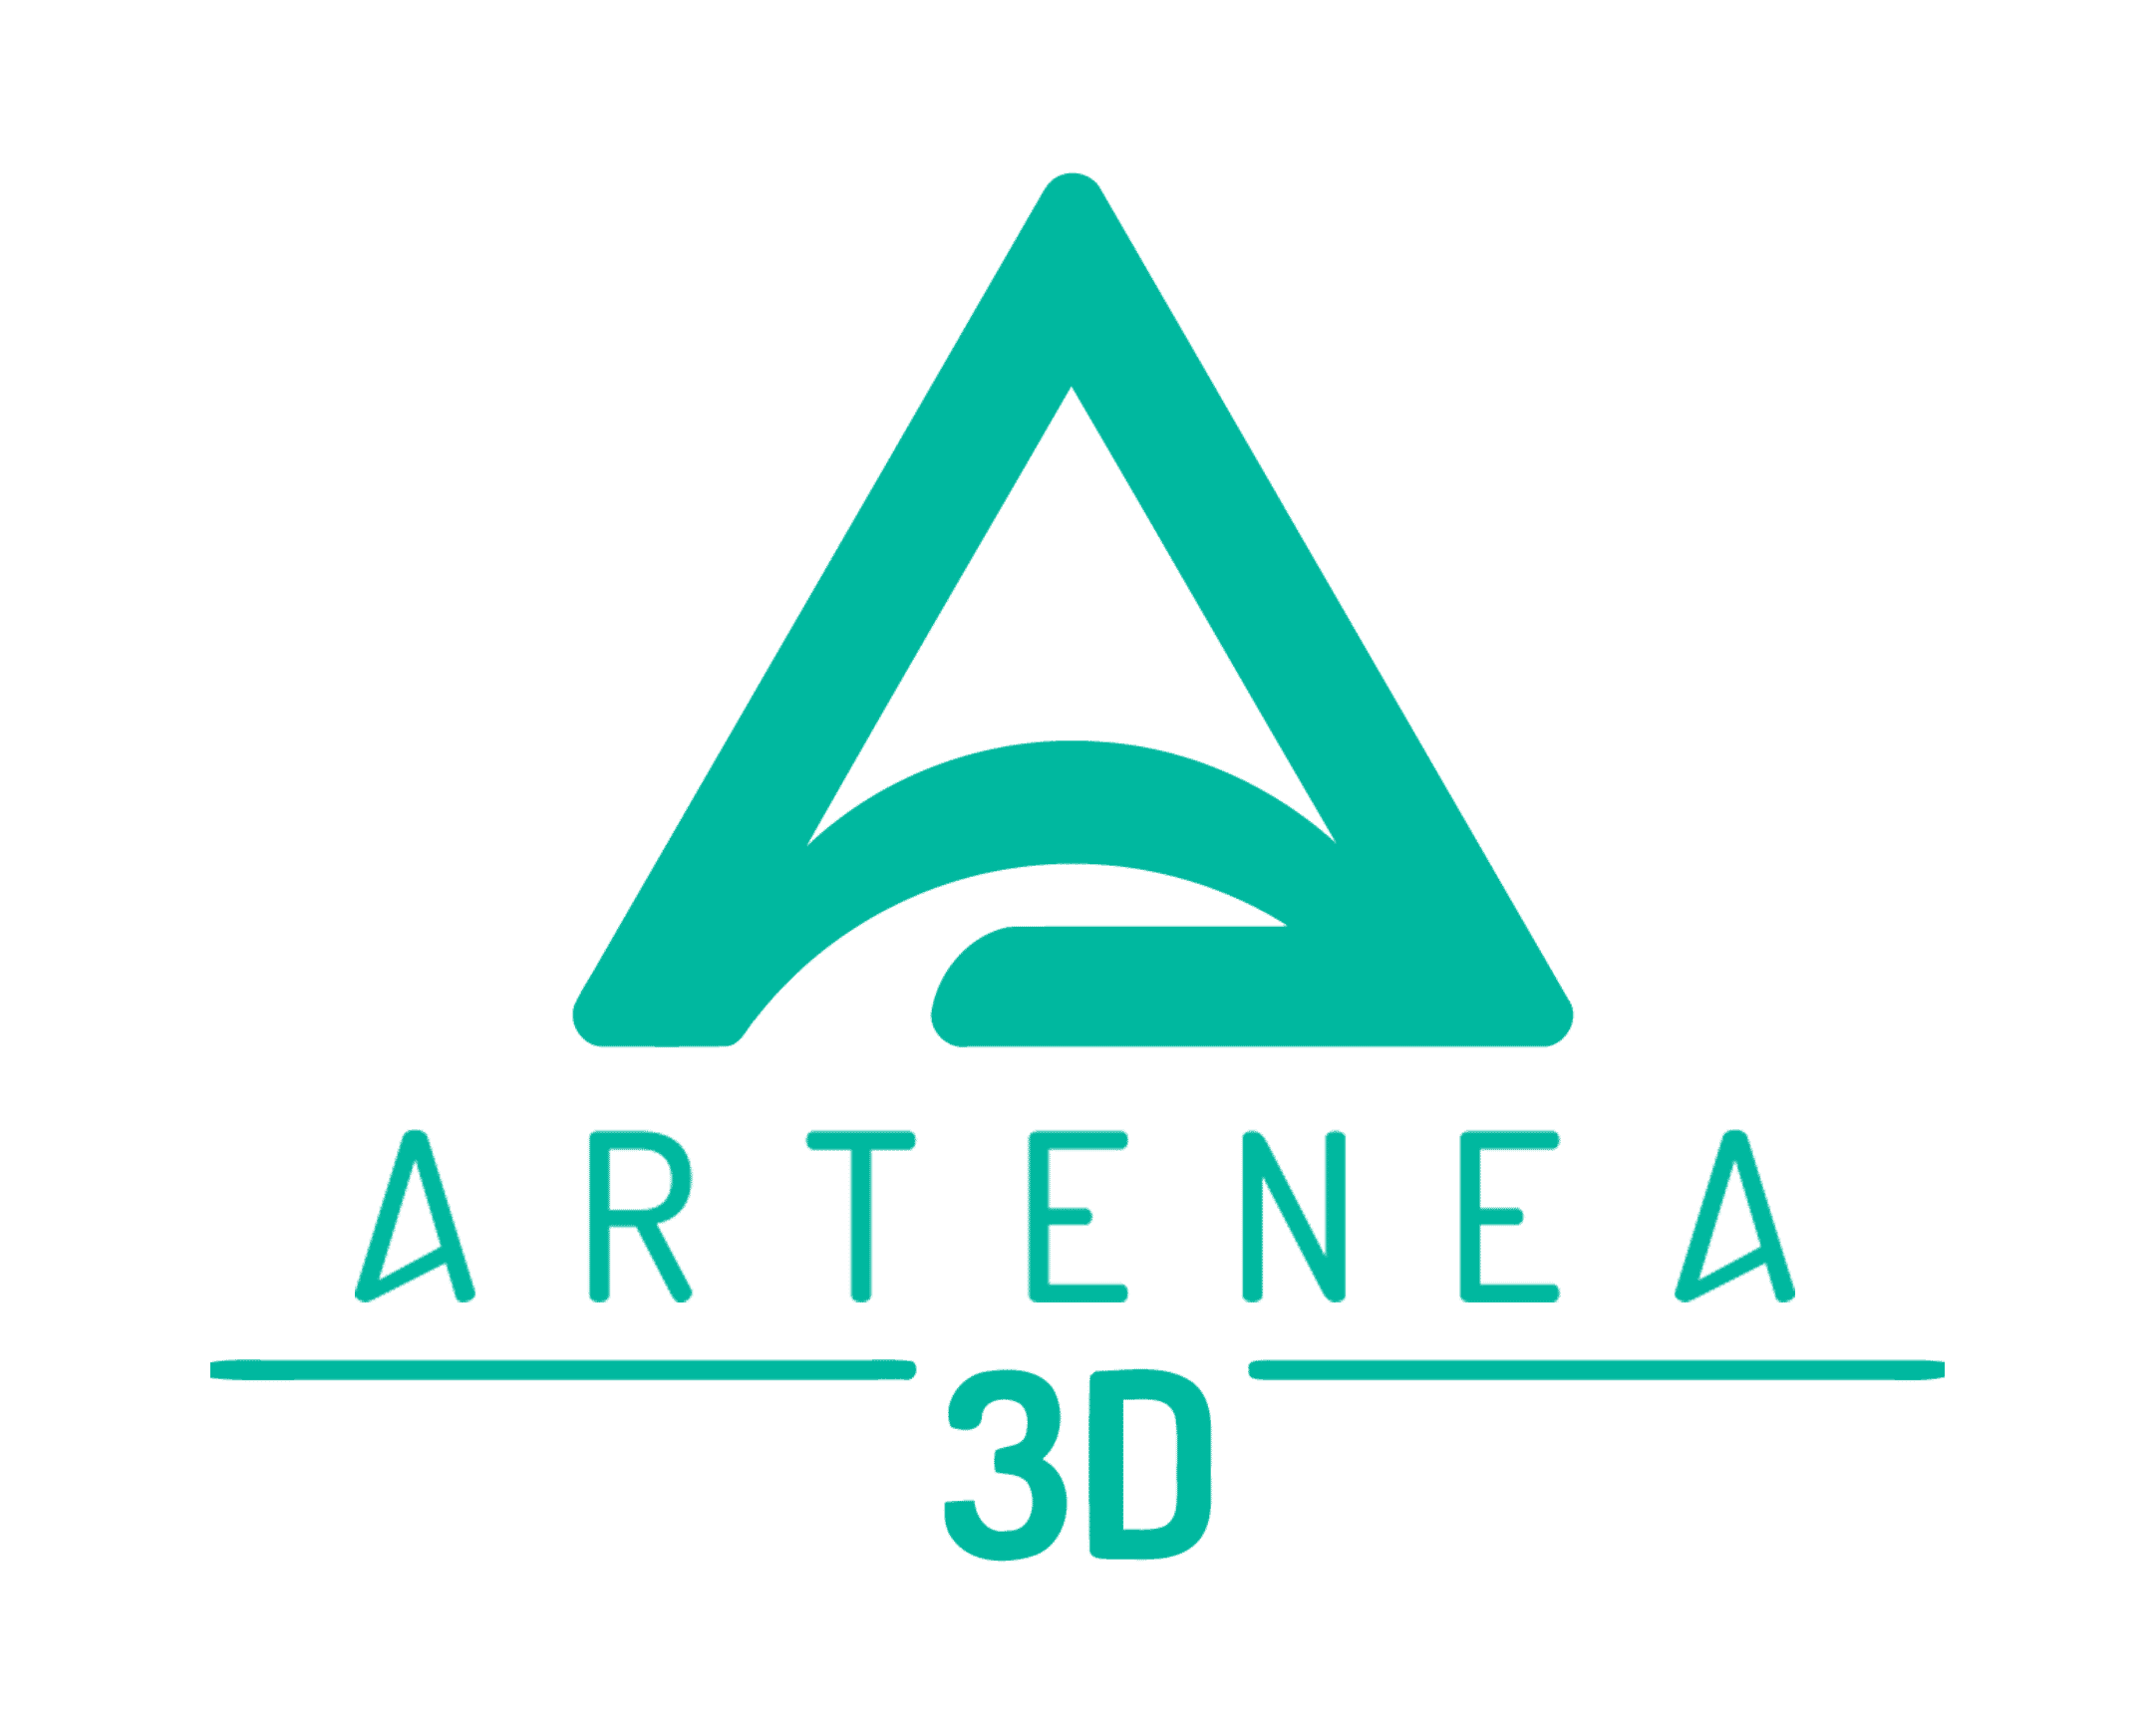 logo_Artenea3d